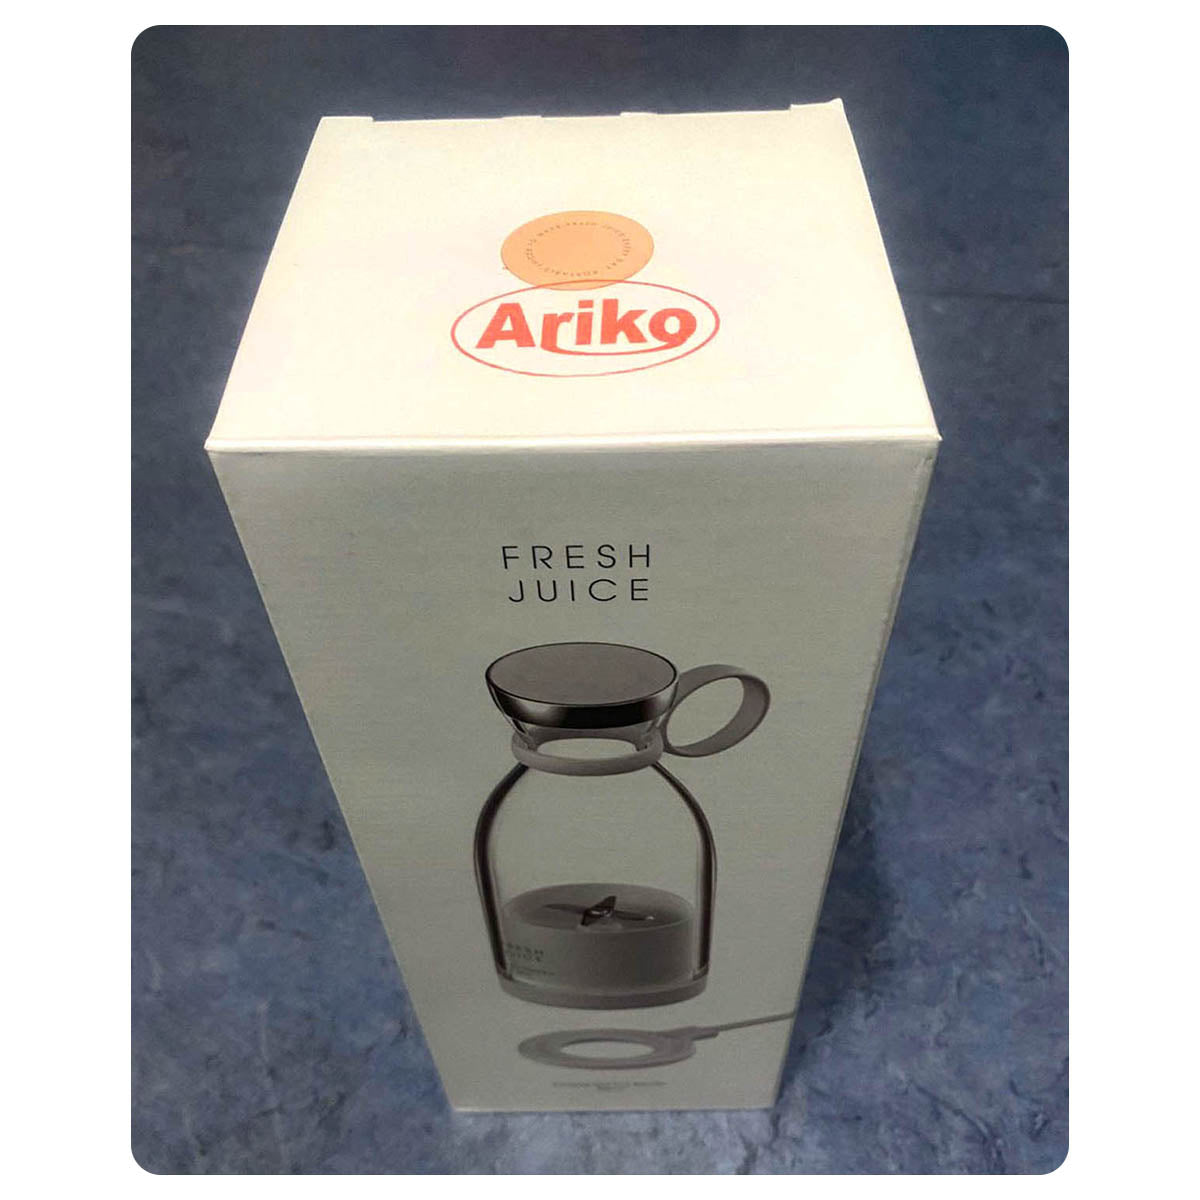 Ariko Tragbarer Mixer – Mini-Mixer für unterwegs – Smoothie-Mixer – Babynahrung – Frische Säfte – 350 ml – Magnetisches USB-Ladegerät – Weiß